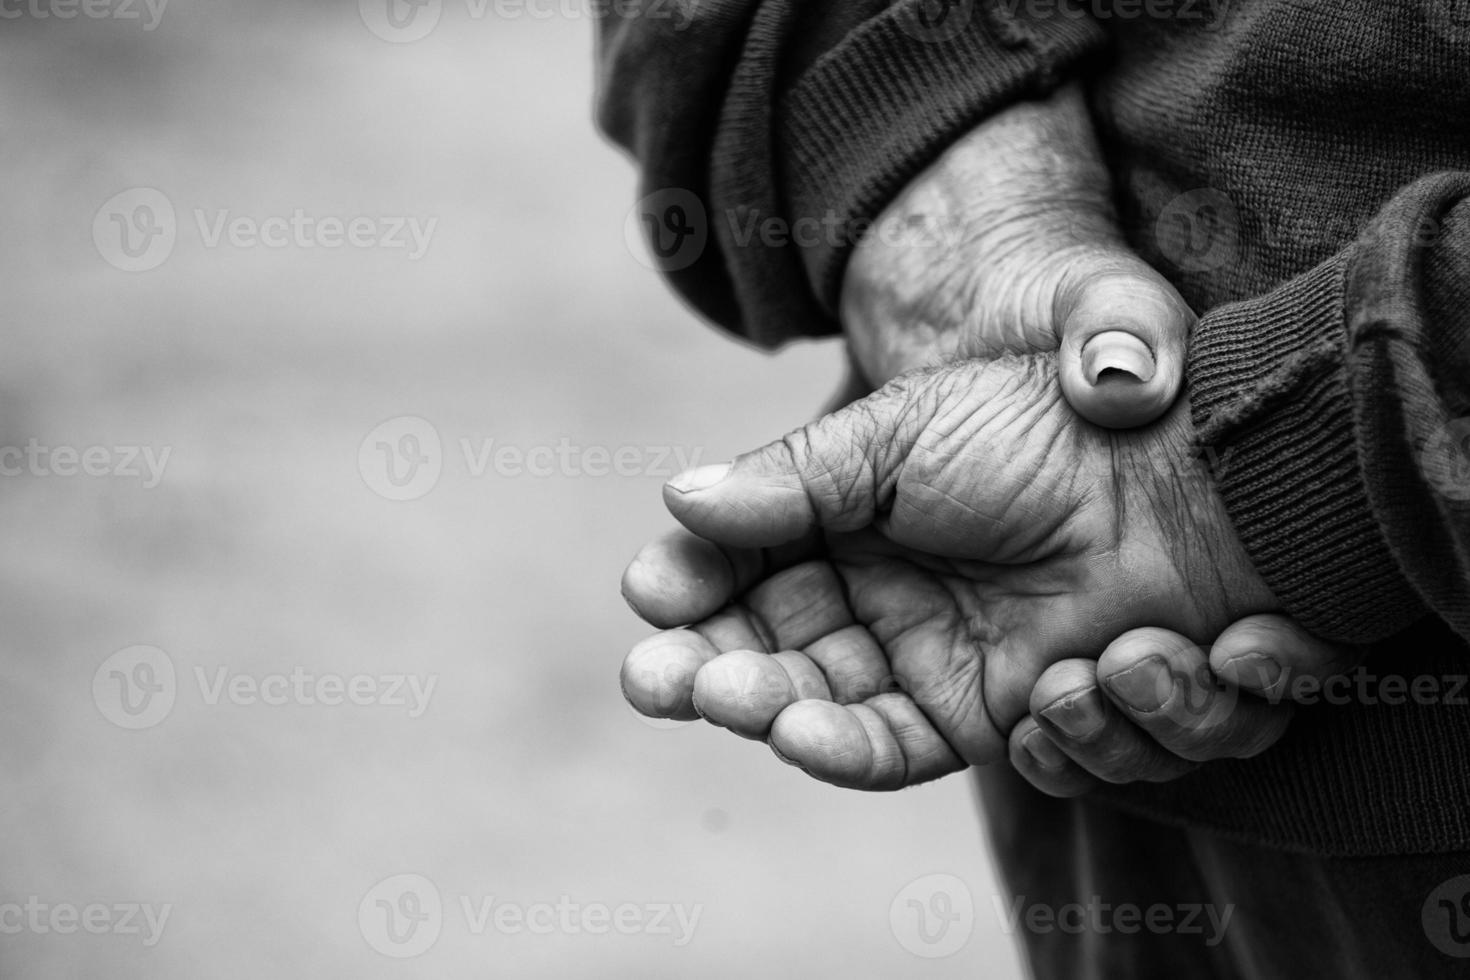 bondens händer av gammal man vem arbetade hård i hans liv foto